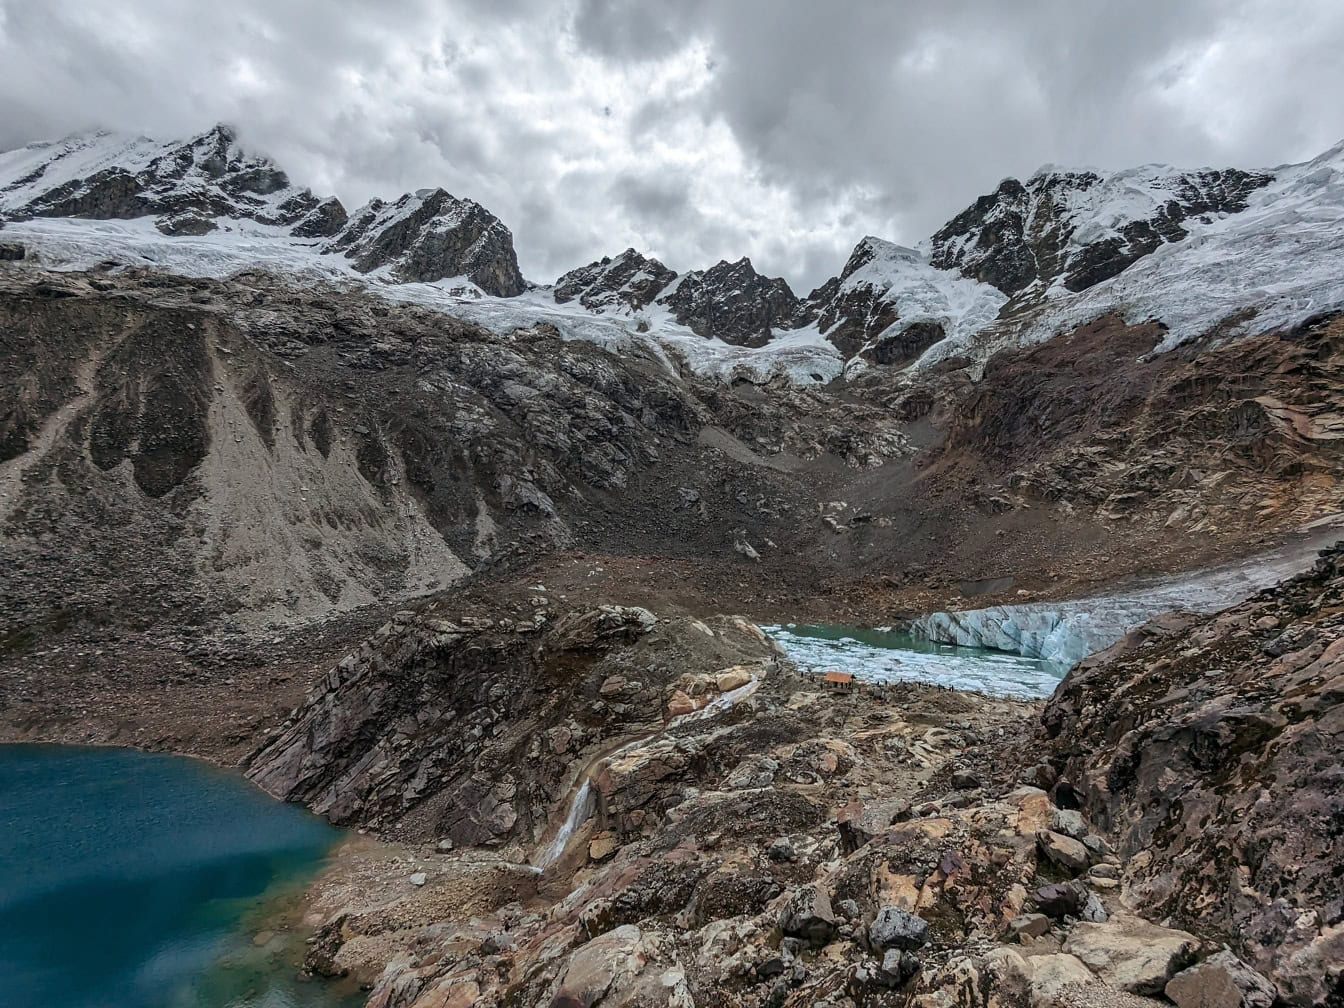 Hồ Rocotuyoc hoặc hồ Paccharuri với một sông băng ở phía sau tại Nevado Copa ở Cordillera Blanca, một khung cảnh tuyệt đẹp của Peru